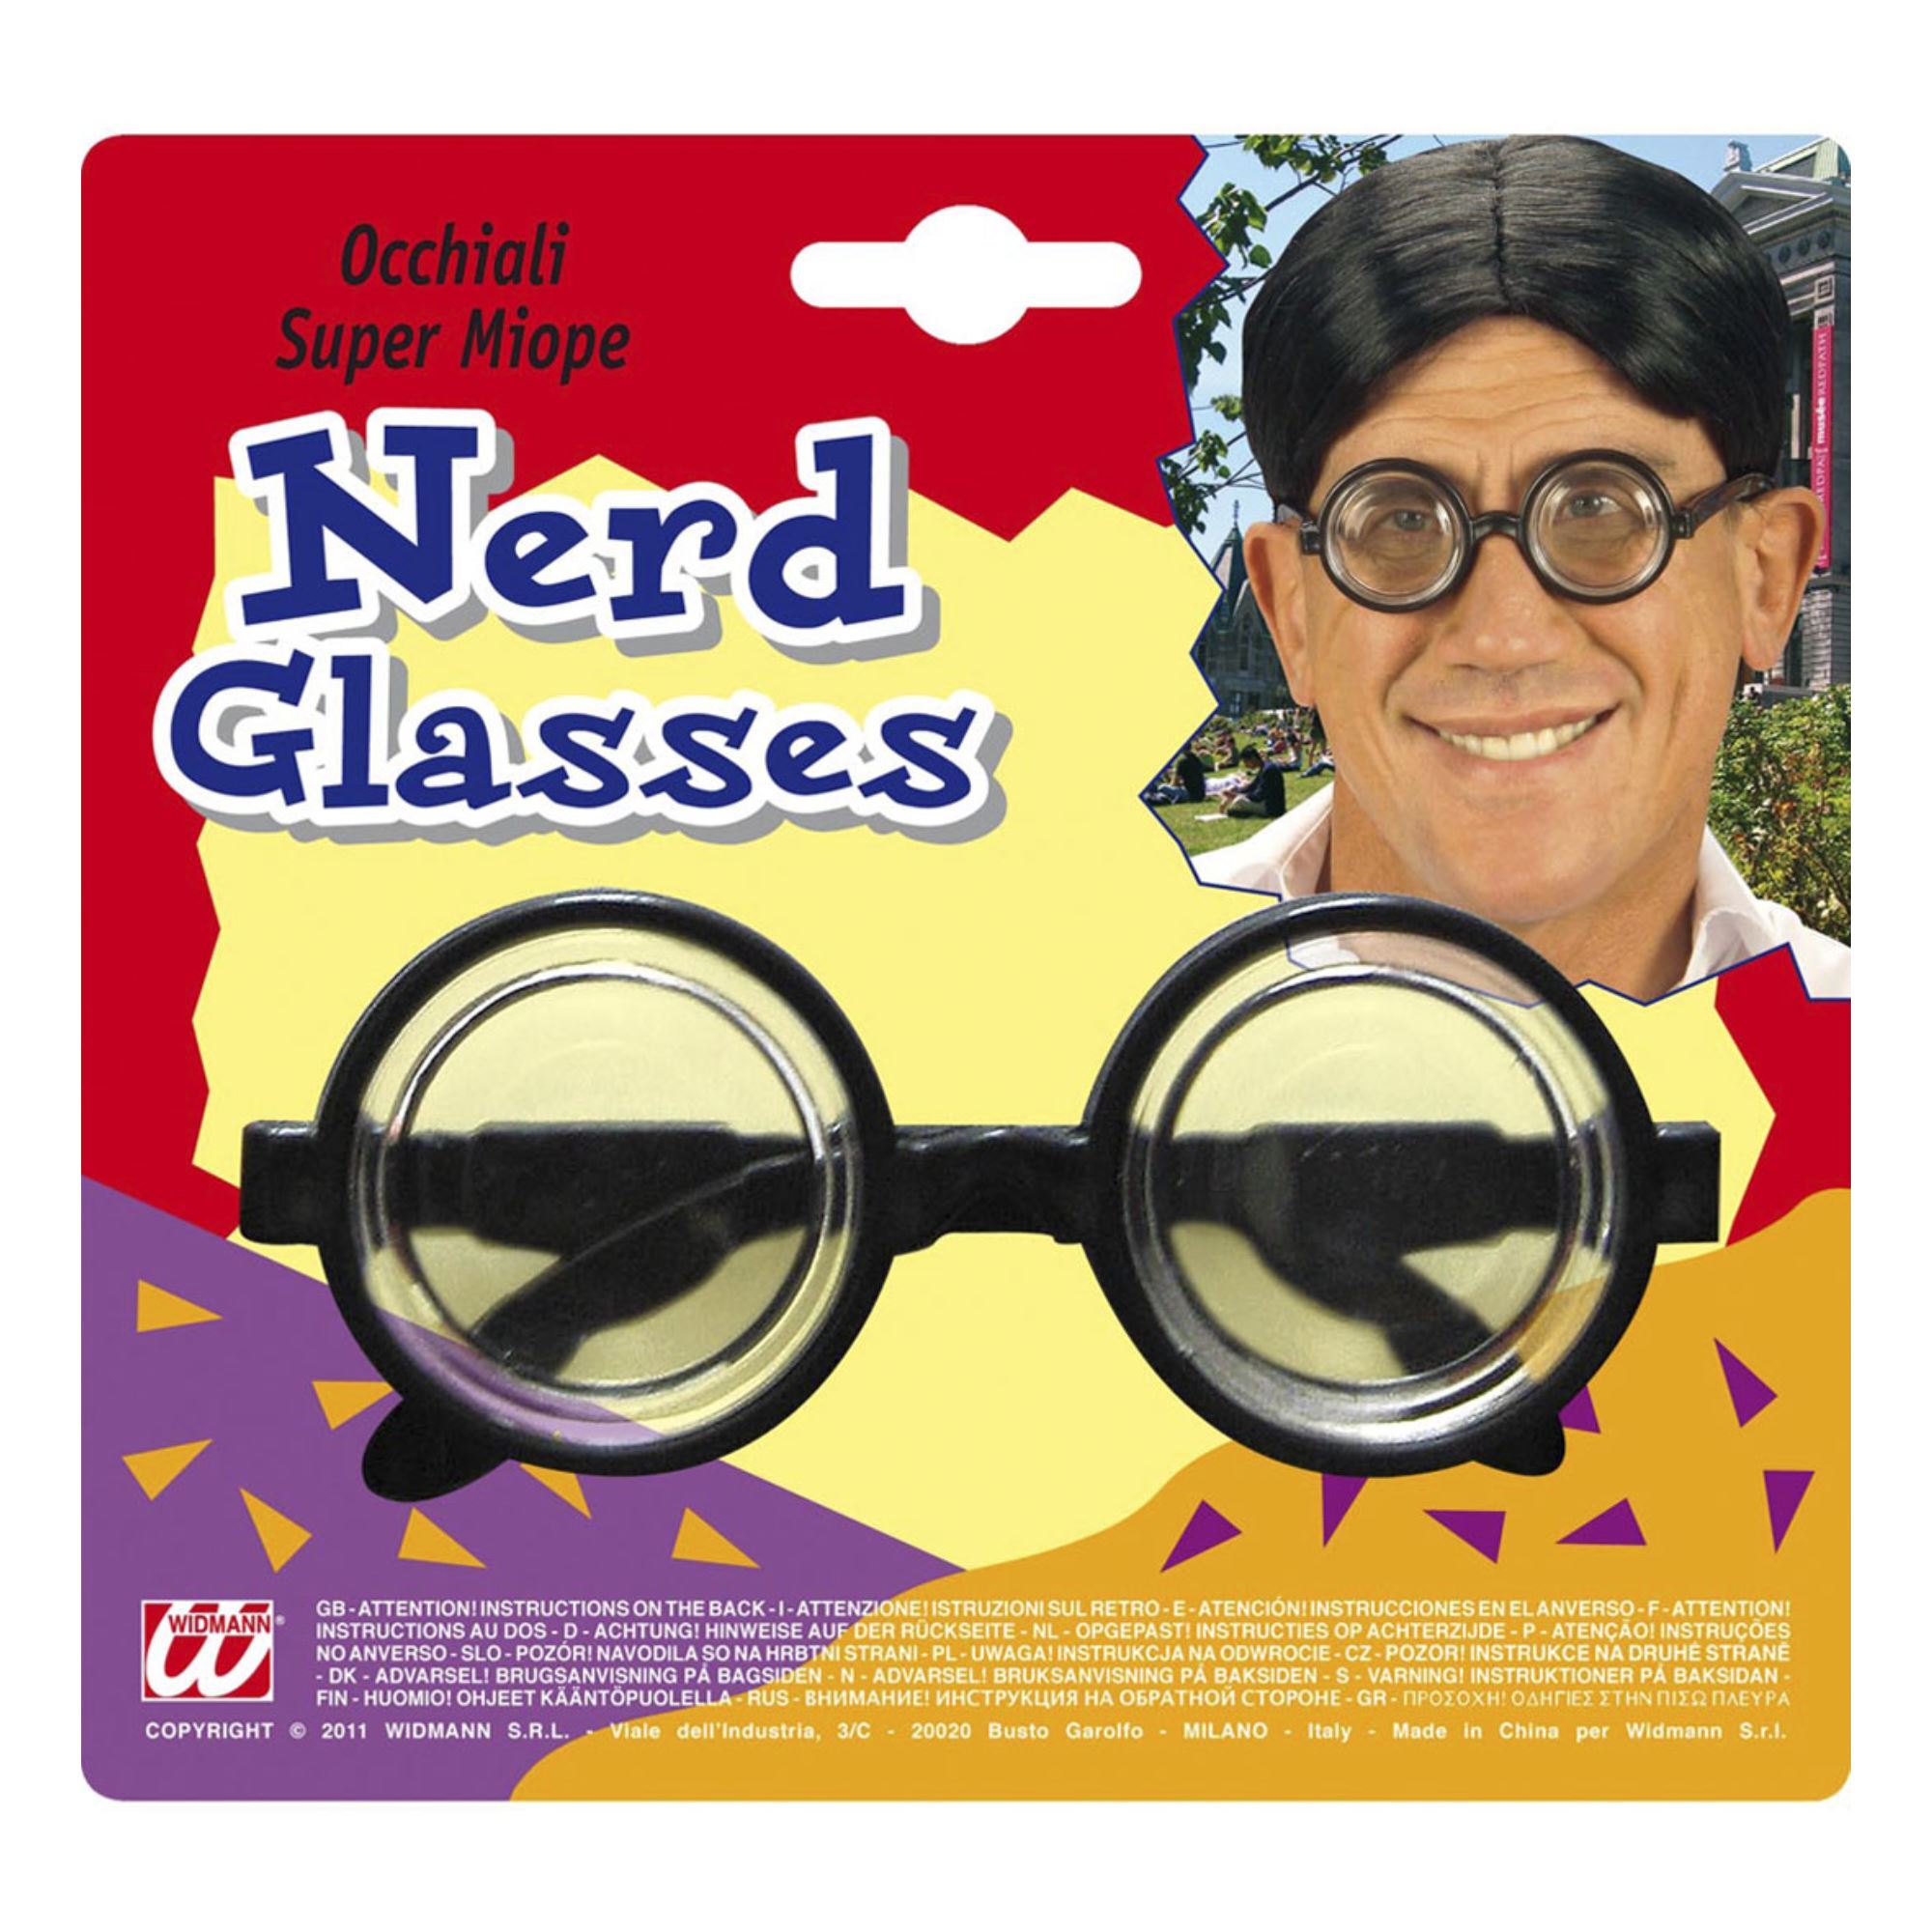 De bril voor nerds